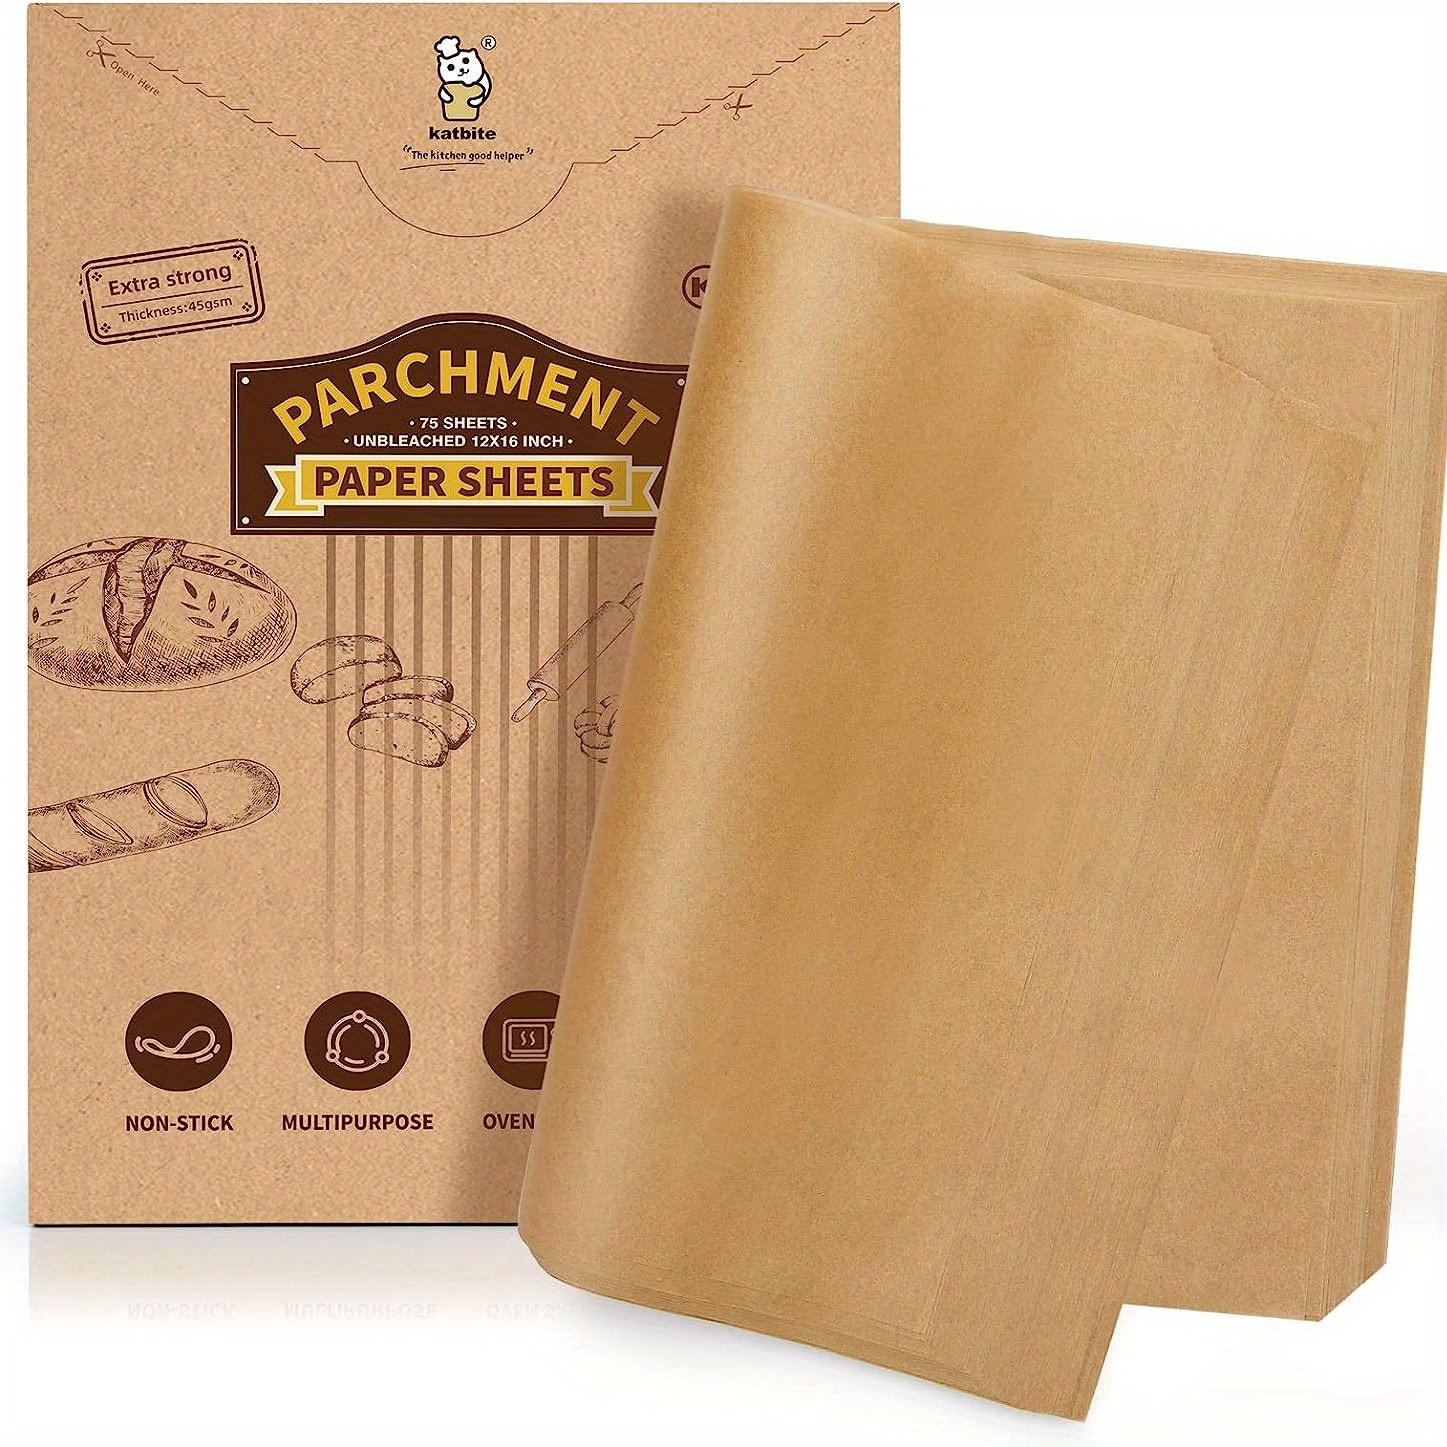 Katbite Unbleached Parchment Paper Sheets, Pre-cut Heavy Duty